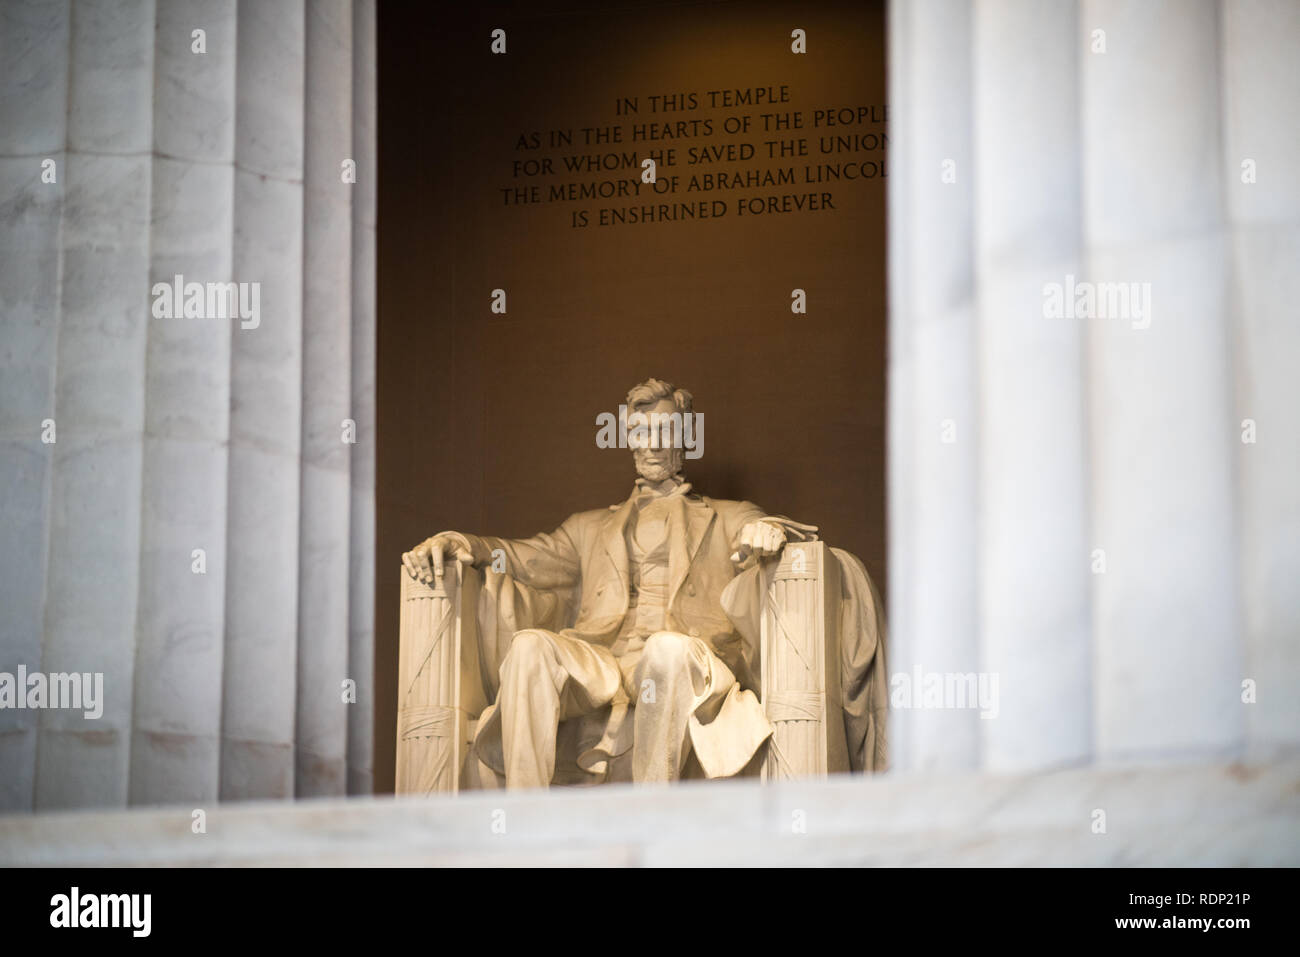 WASHINGTON DC, USA – die Lincoln Memorial Statue, die sich im Lincoln Memorial in Washington, DC, USA, befindet, ist ein bemerkenswertes Kunstwerk und ein wichtiges Symbol der amerikanischen Geschichte. Diese berühmte Marmorstatue wurde vom berühmten Bildhauer Daniel Chester French entworfen und repräsentiert Abraham Lincoln, den 16. Präsidenten der Vereinigten Staaten, der während der turbulenten Zeit des Bürgerkriegs eine entscheidende Rolle beim Erhalt der Nation spielte. Stockfoto